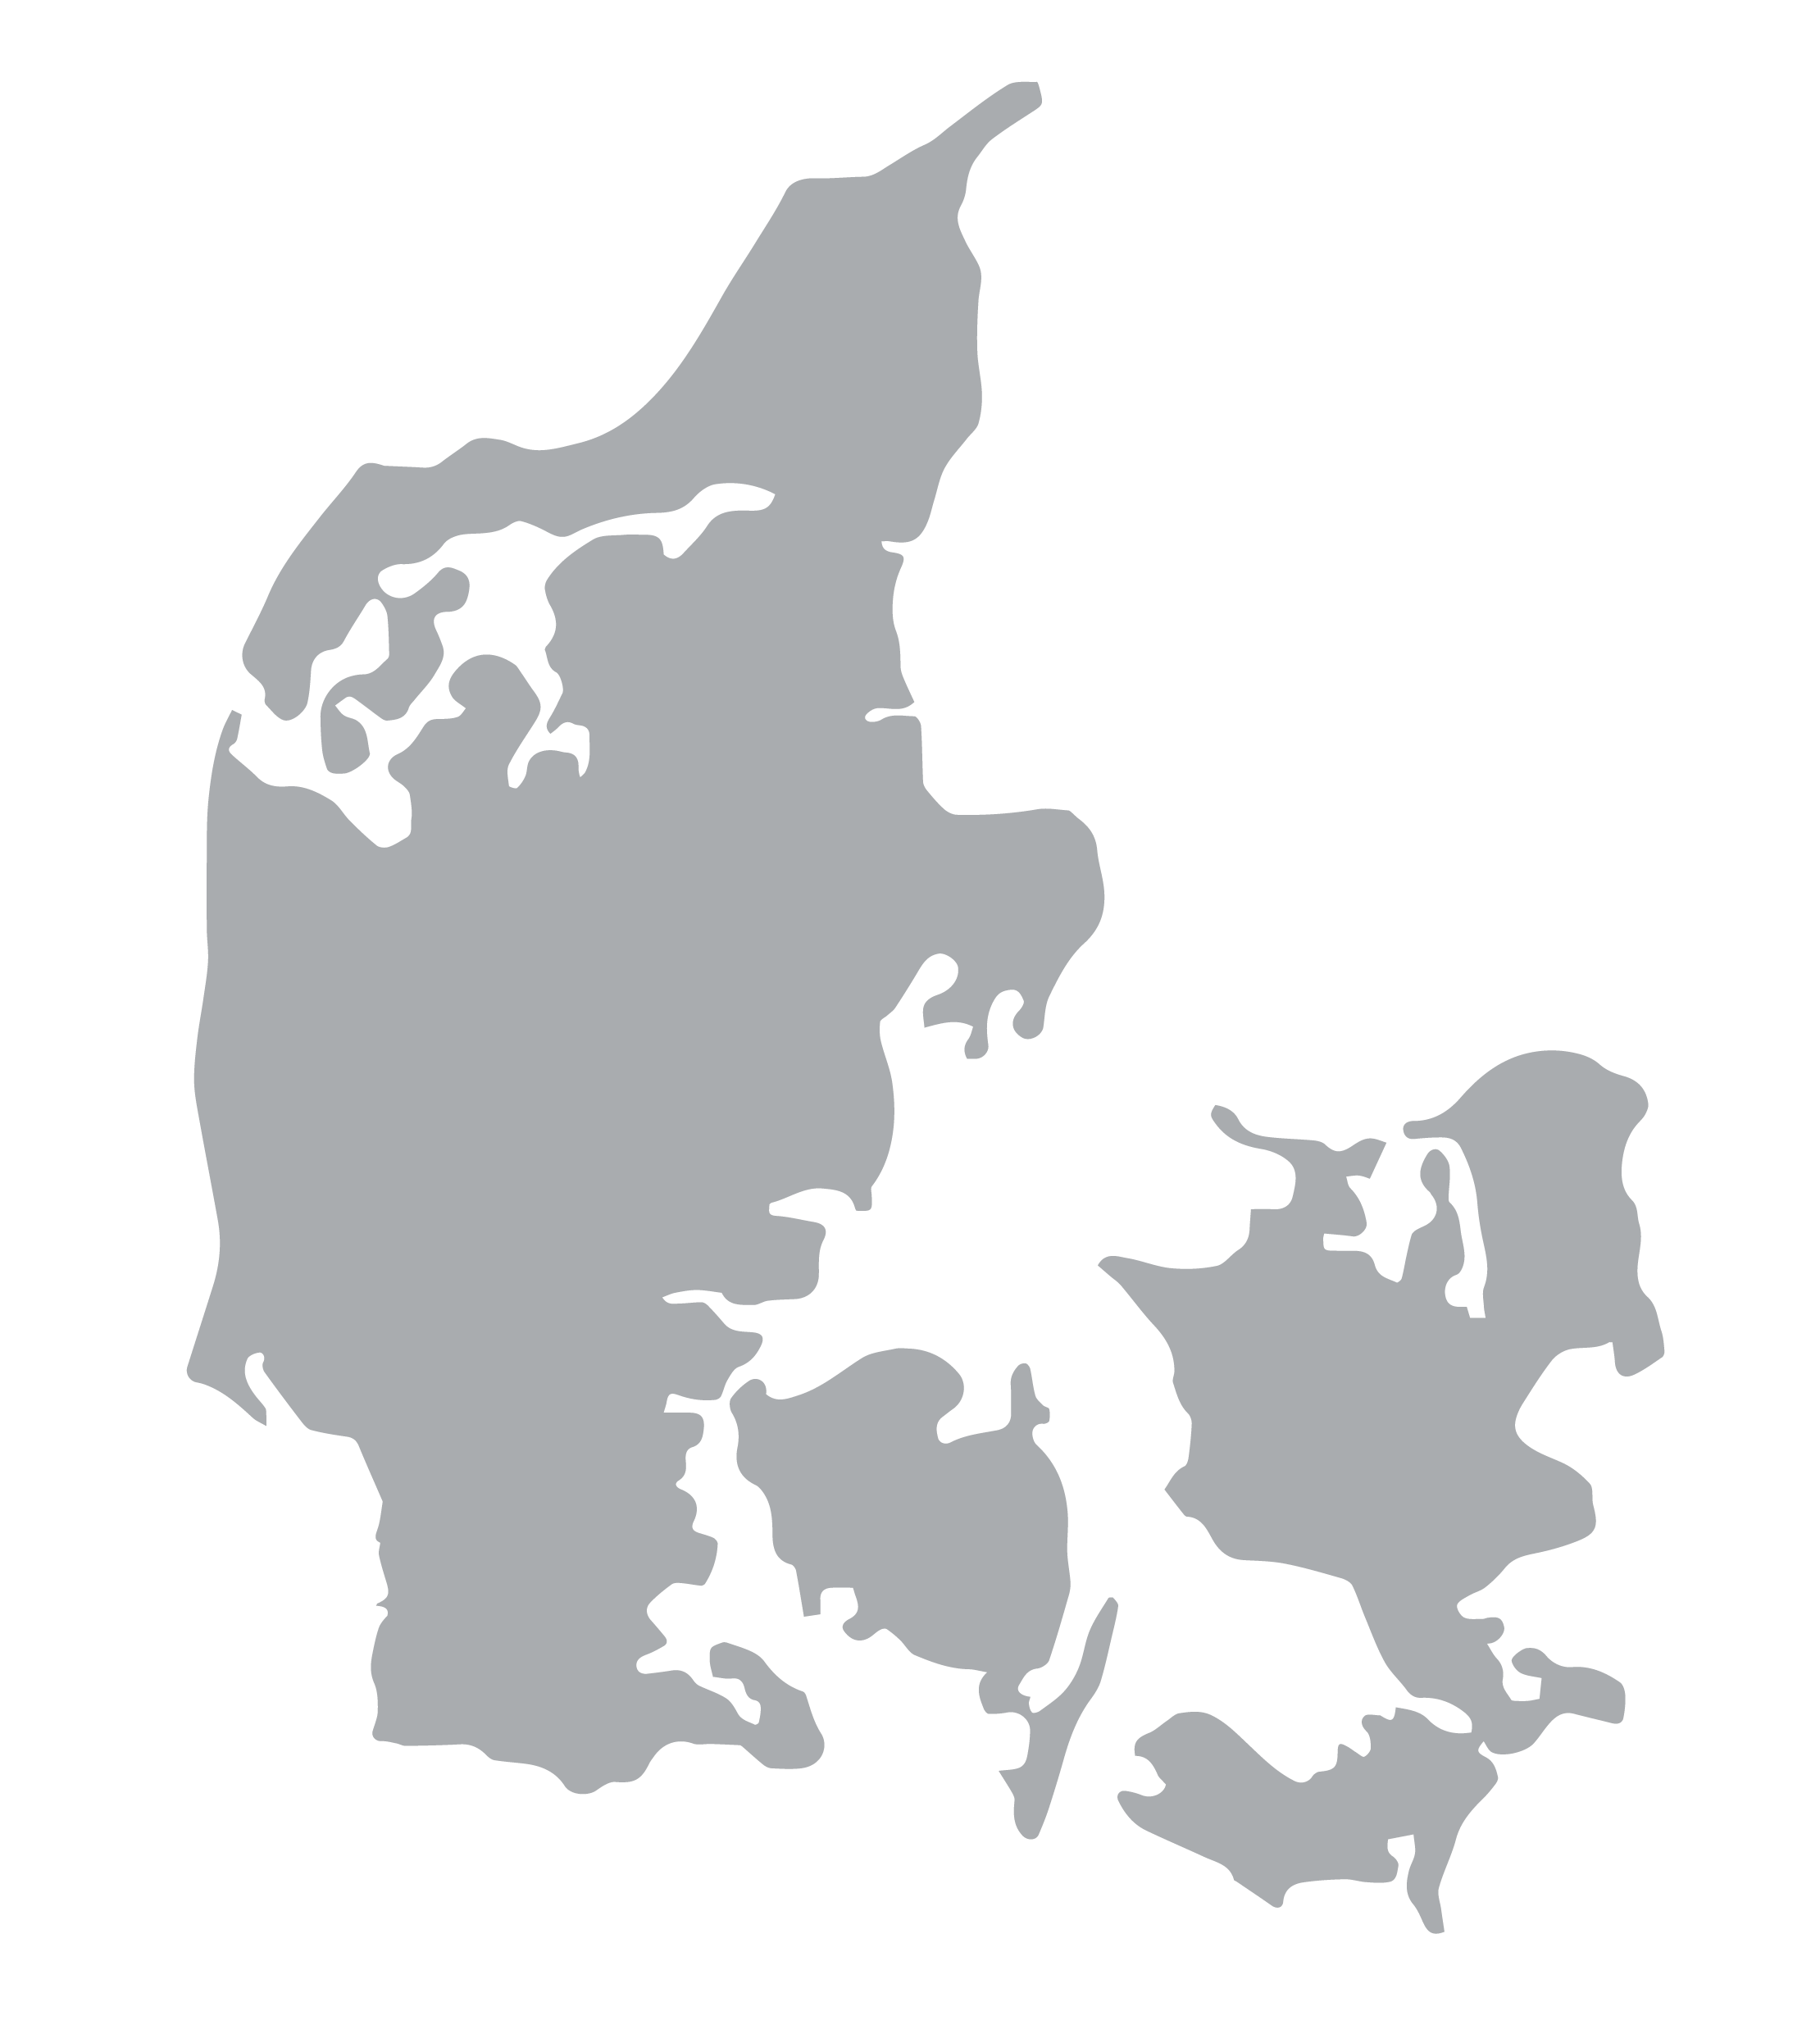 Denmark Recruitment